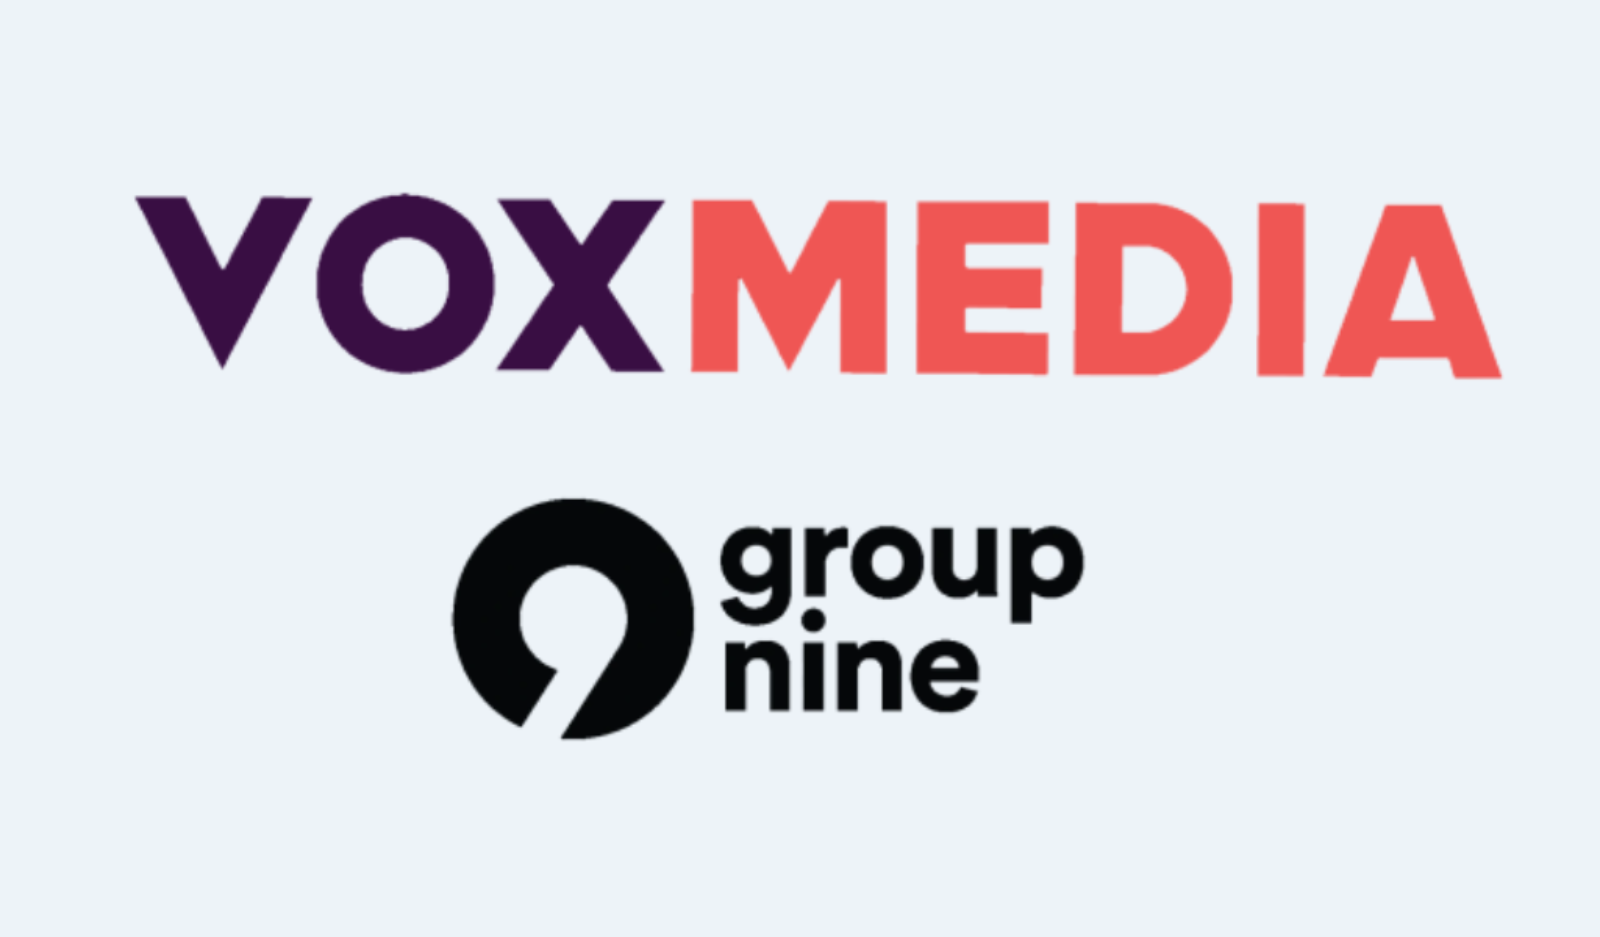 数字电厂事务:Vox媒体宣布九大集团合并